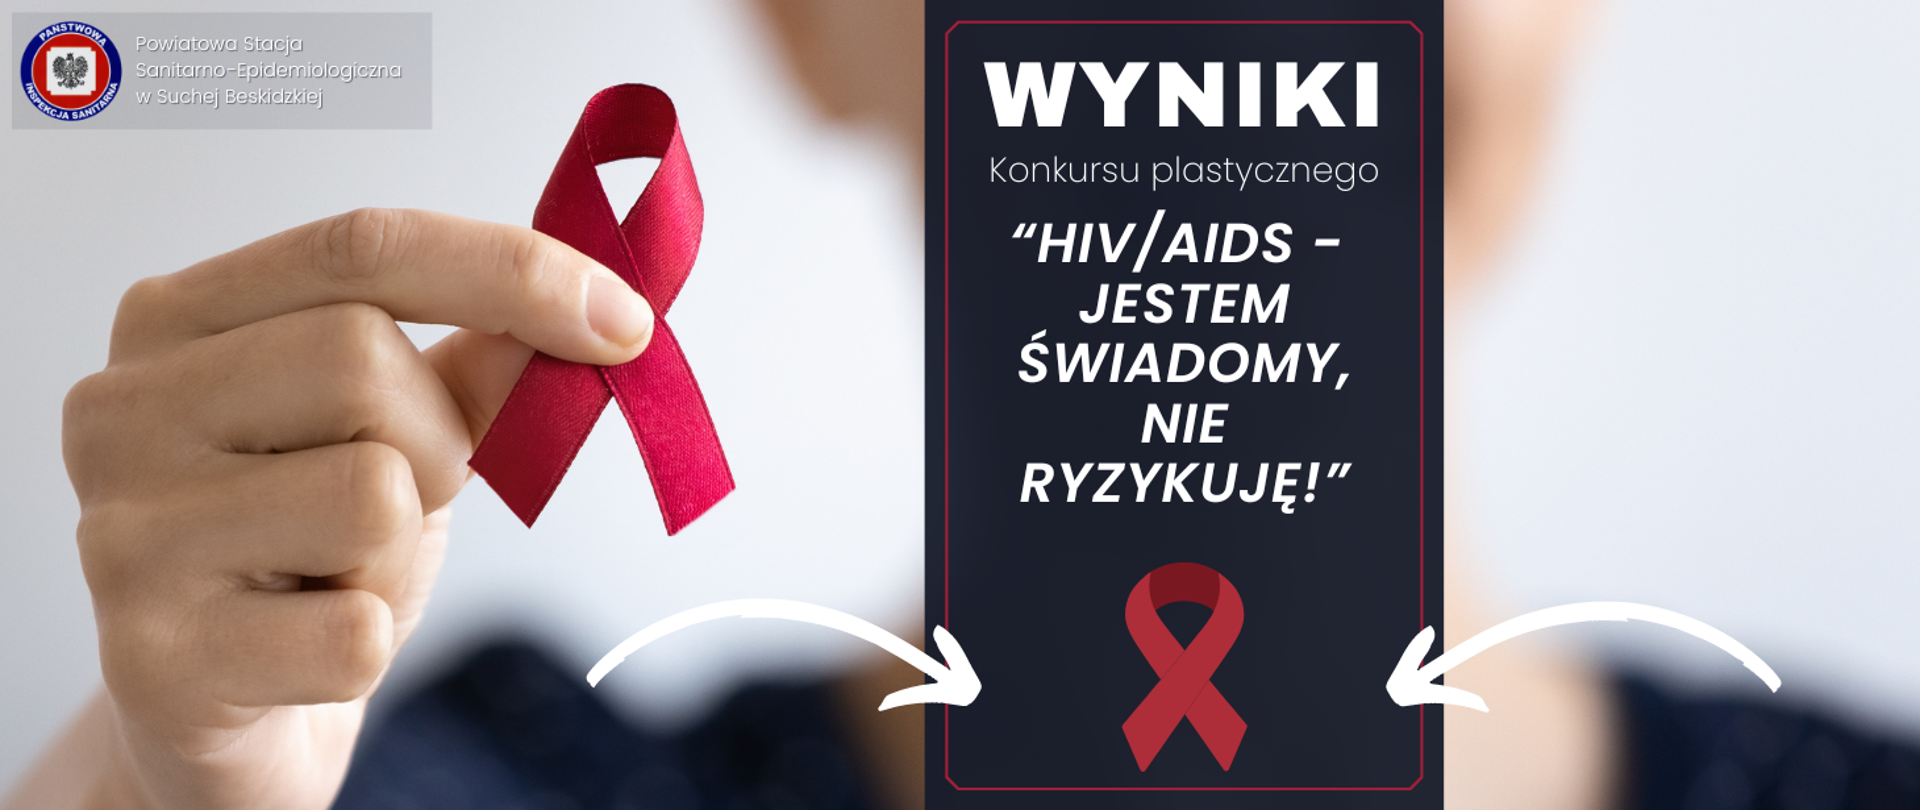 Rozstrzygnięto powiatowy konkurs plastyczny na plakat pt.: „HIV/AIDS"- jestem świadomy, nie ryzykuję!”